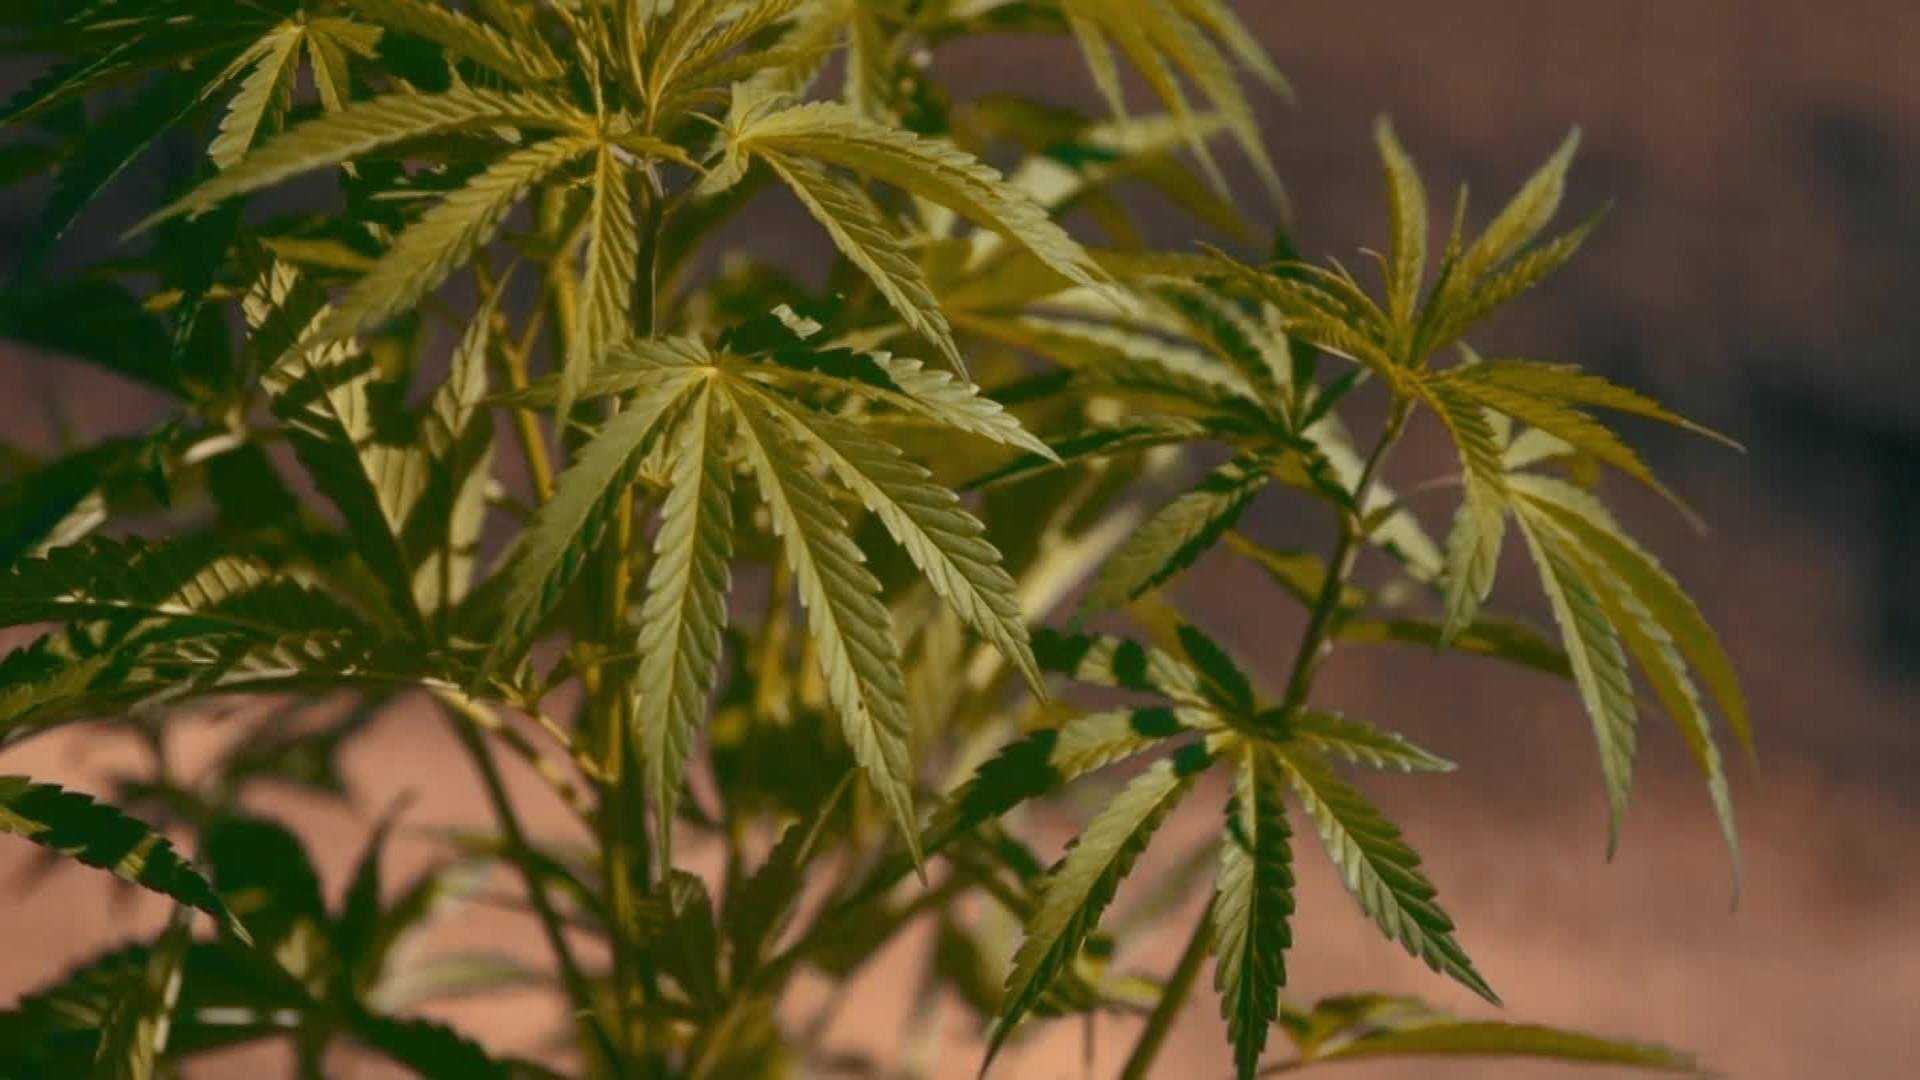 Maine lawmaker's bill helps kids prescribed medical marijuana